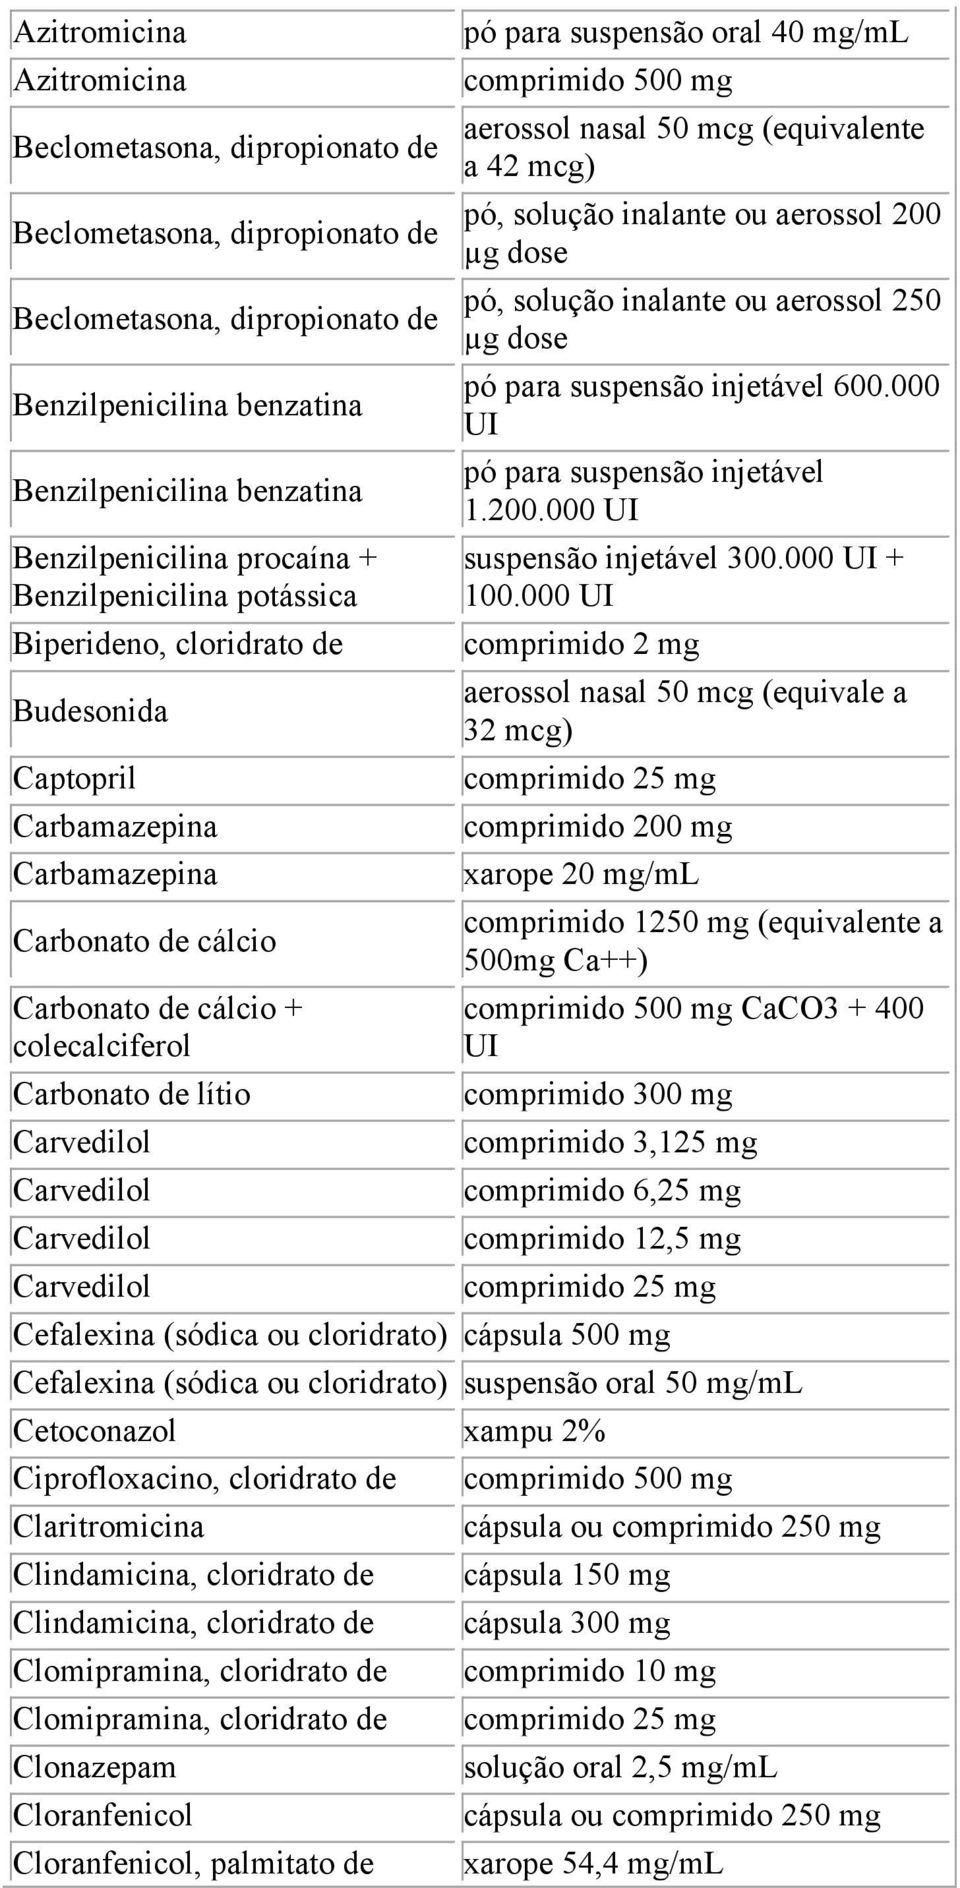 Carvedilol Carvedilol Carvedilol pó para suspensão oral 40 mg/ml aerossol nasal 50 mcg (equivalente a 42 mcg) pó, solução inalante ou aerossol 200 µg dose pó, solução inalante ou aerossol 250 µg dose